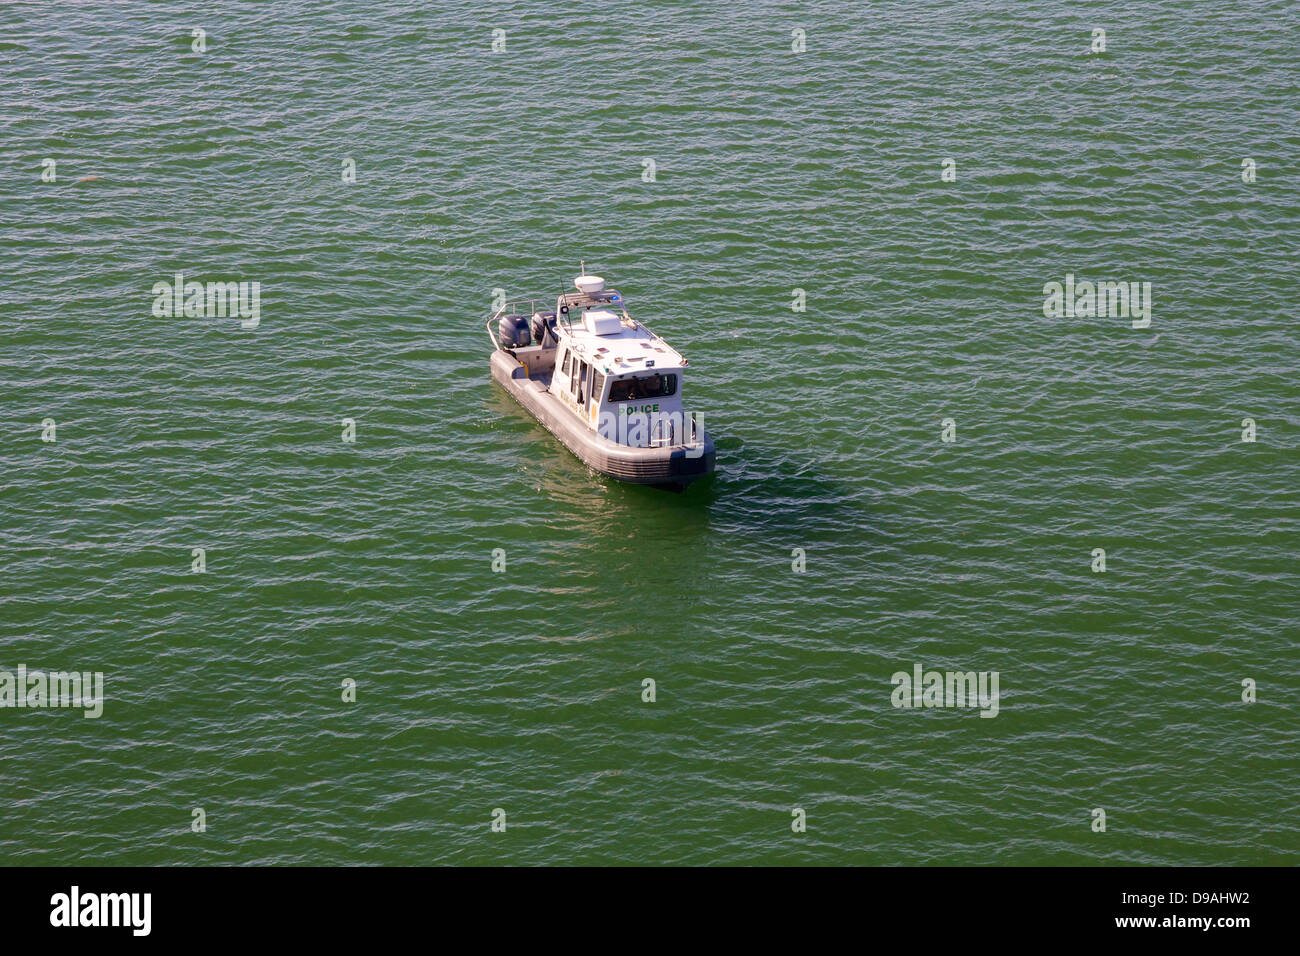 Small Miami Dade Police boat in the port of Miami, FL, USA. Stock Photo